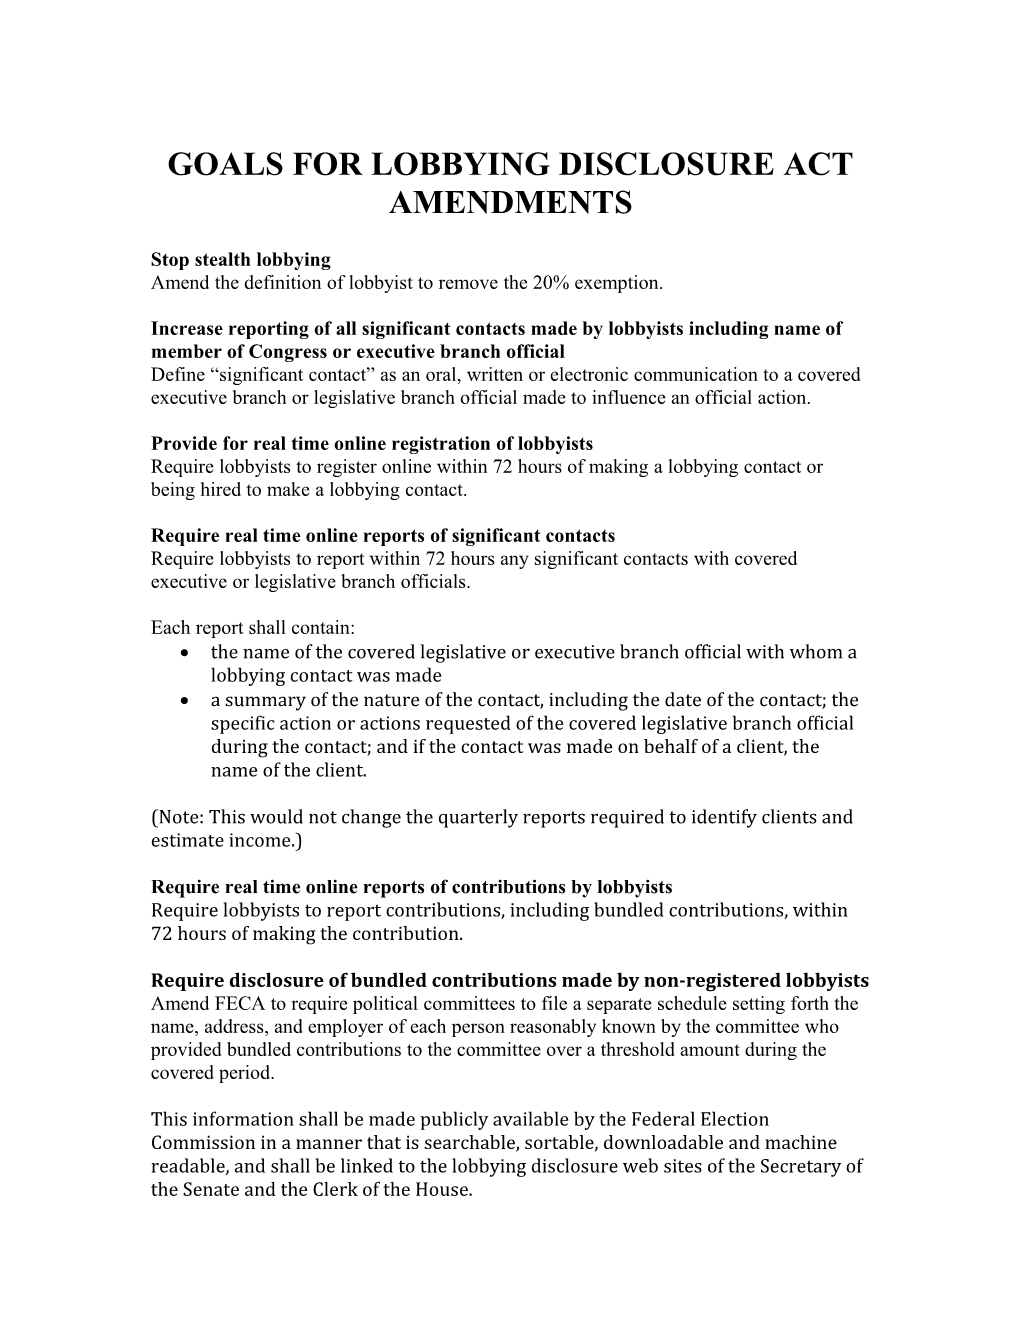 Goals for Lobbying Disclosure Act Amendments